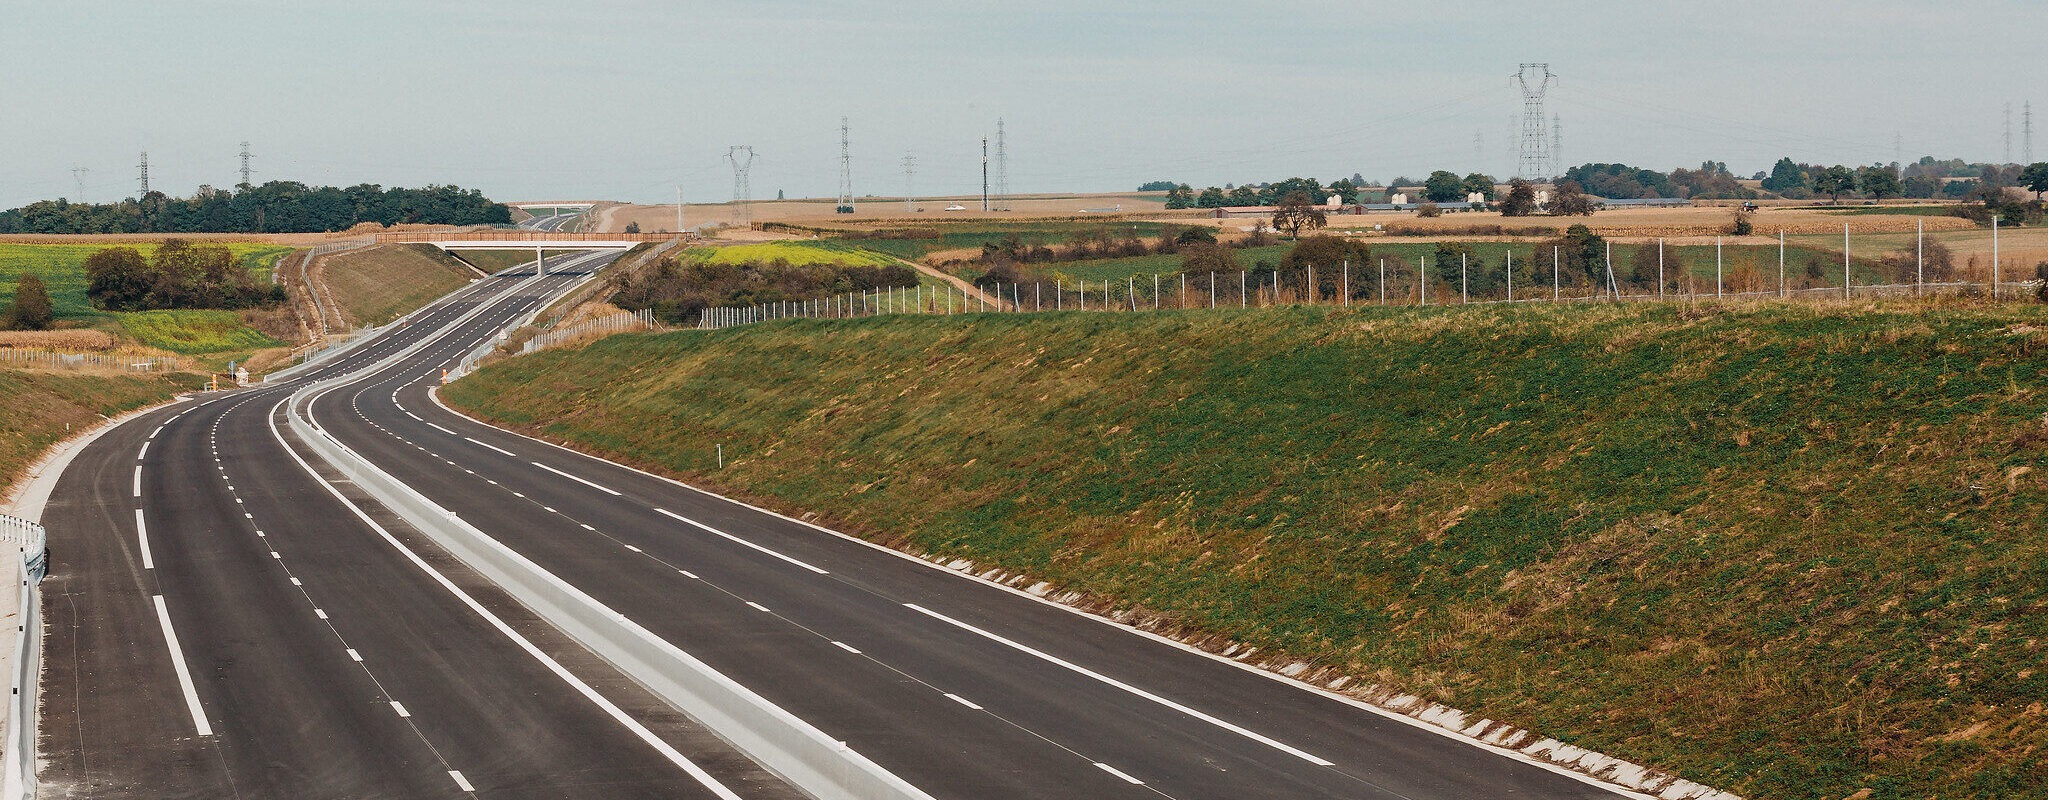 Le GCO est la deuxième autoroute la plus chère de France